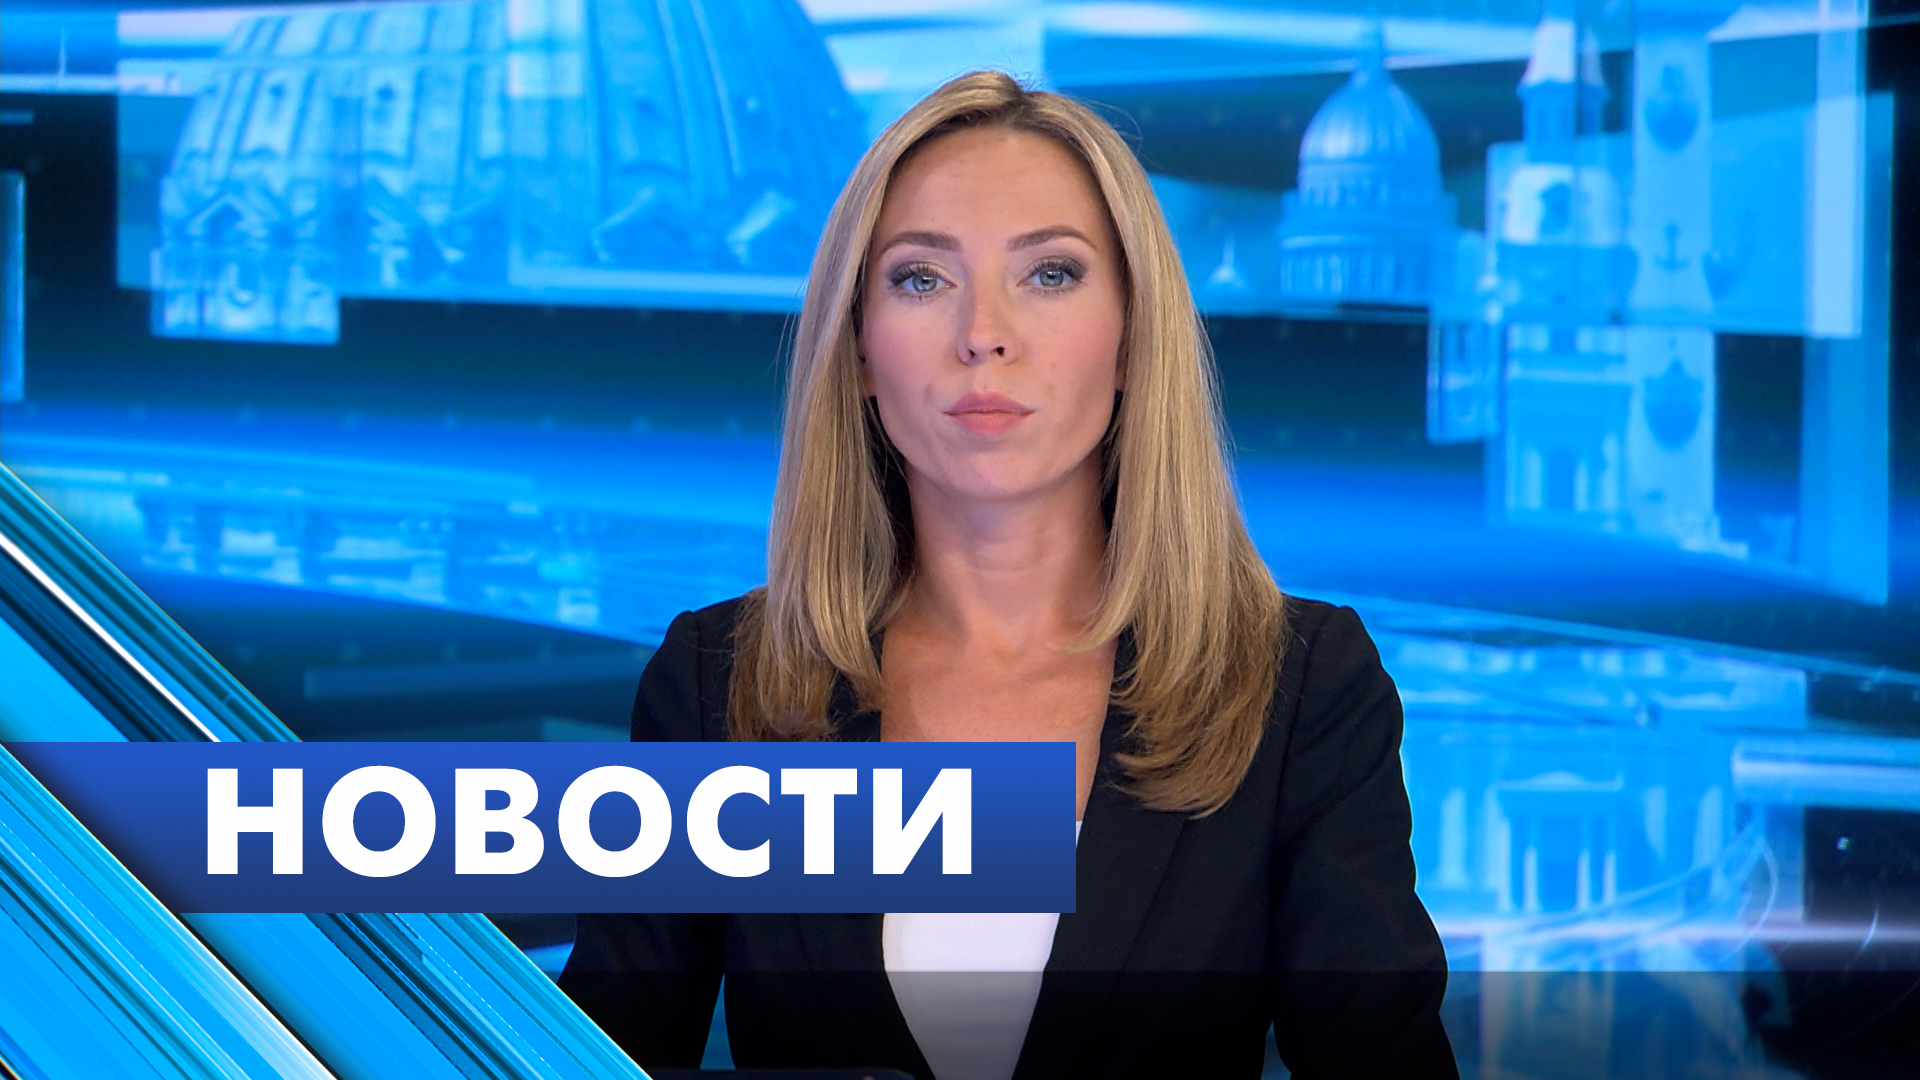 Главные новости Петербурга / 3 октября